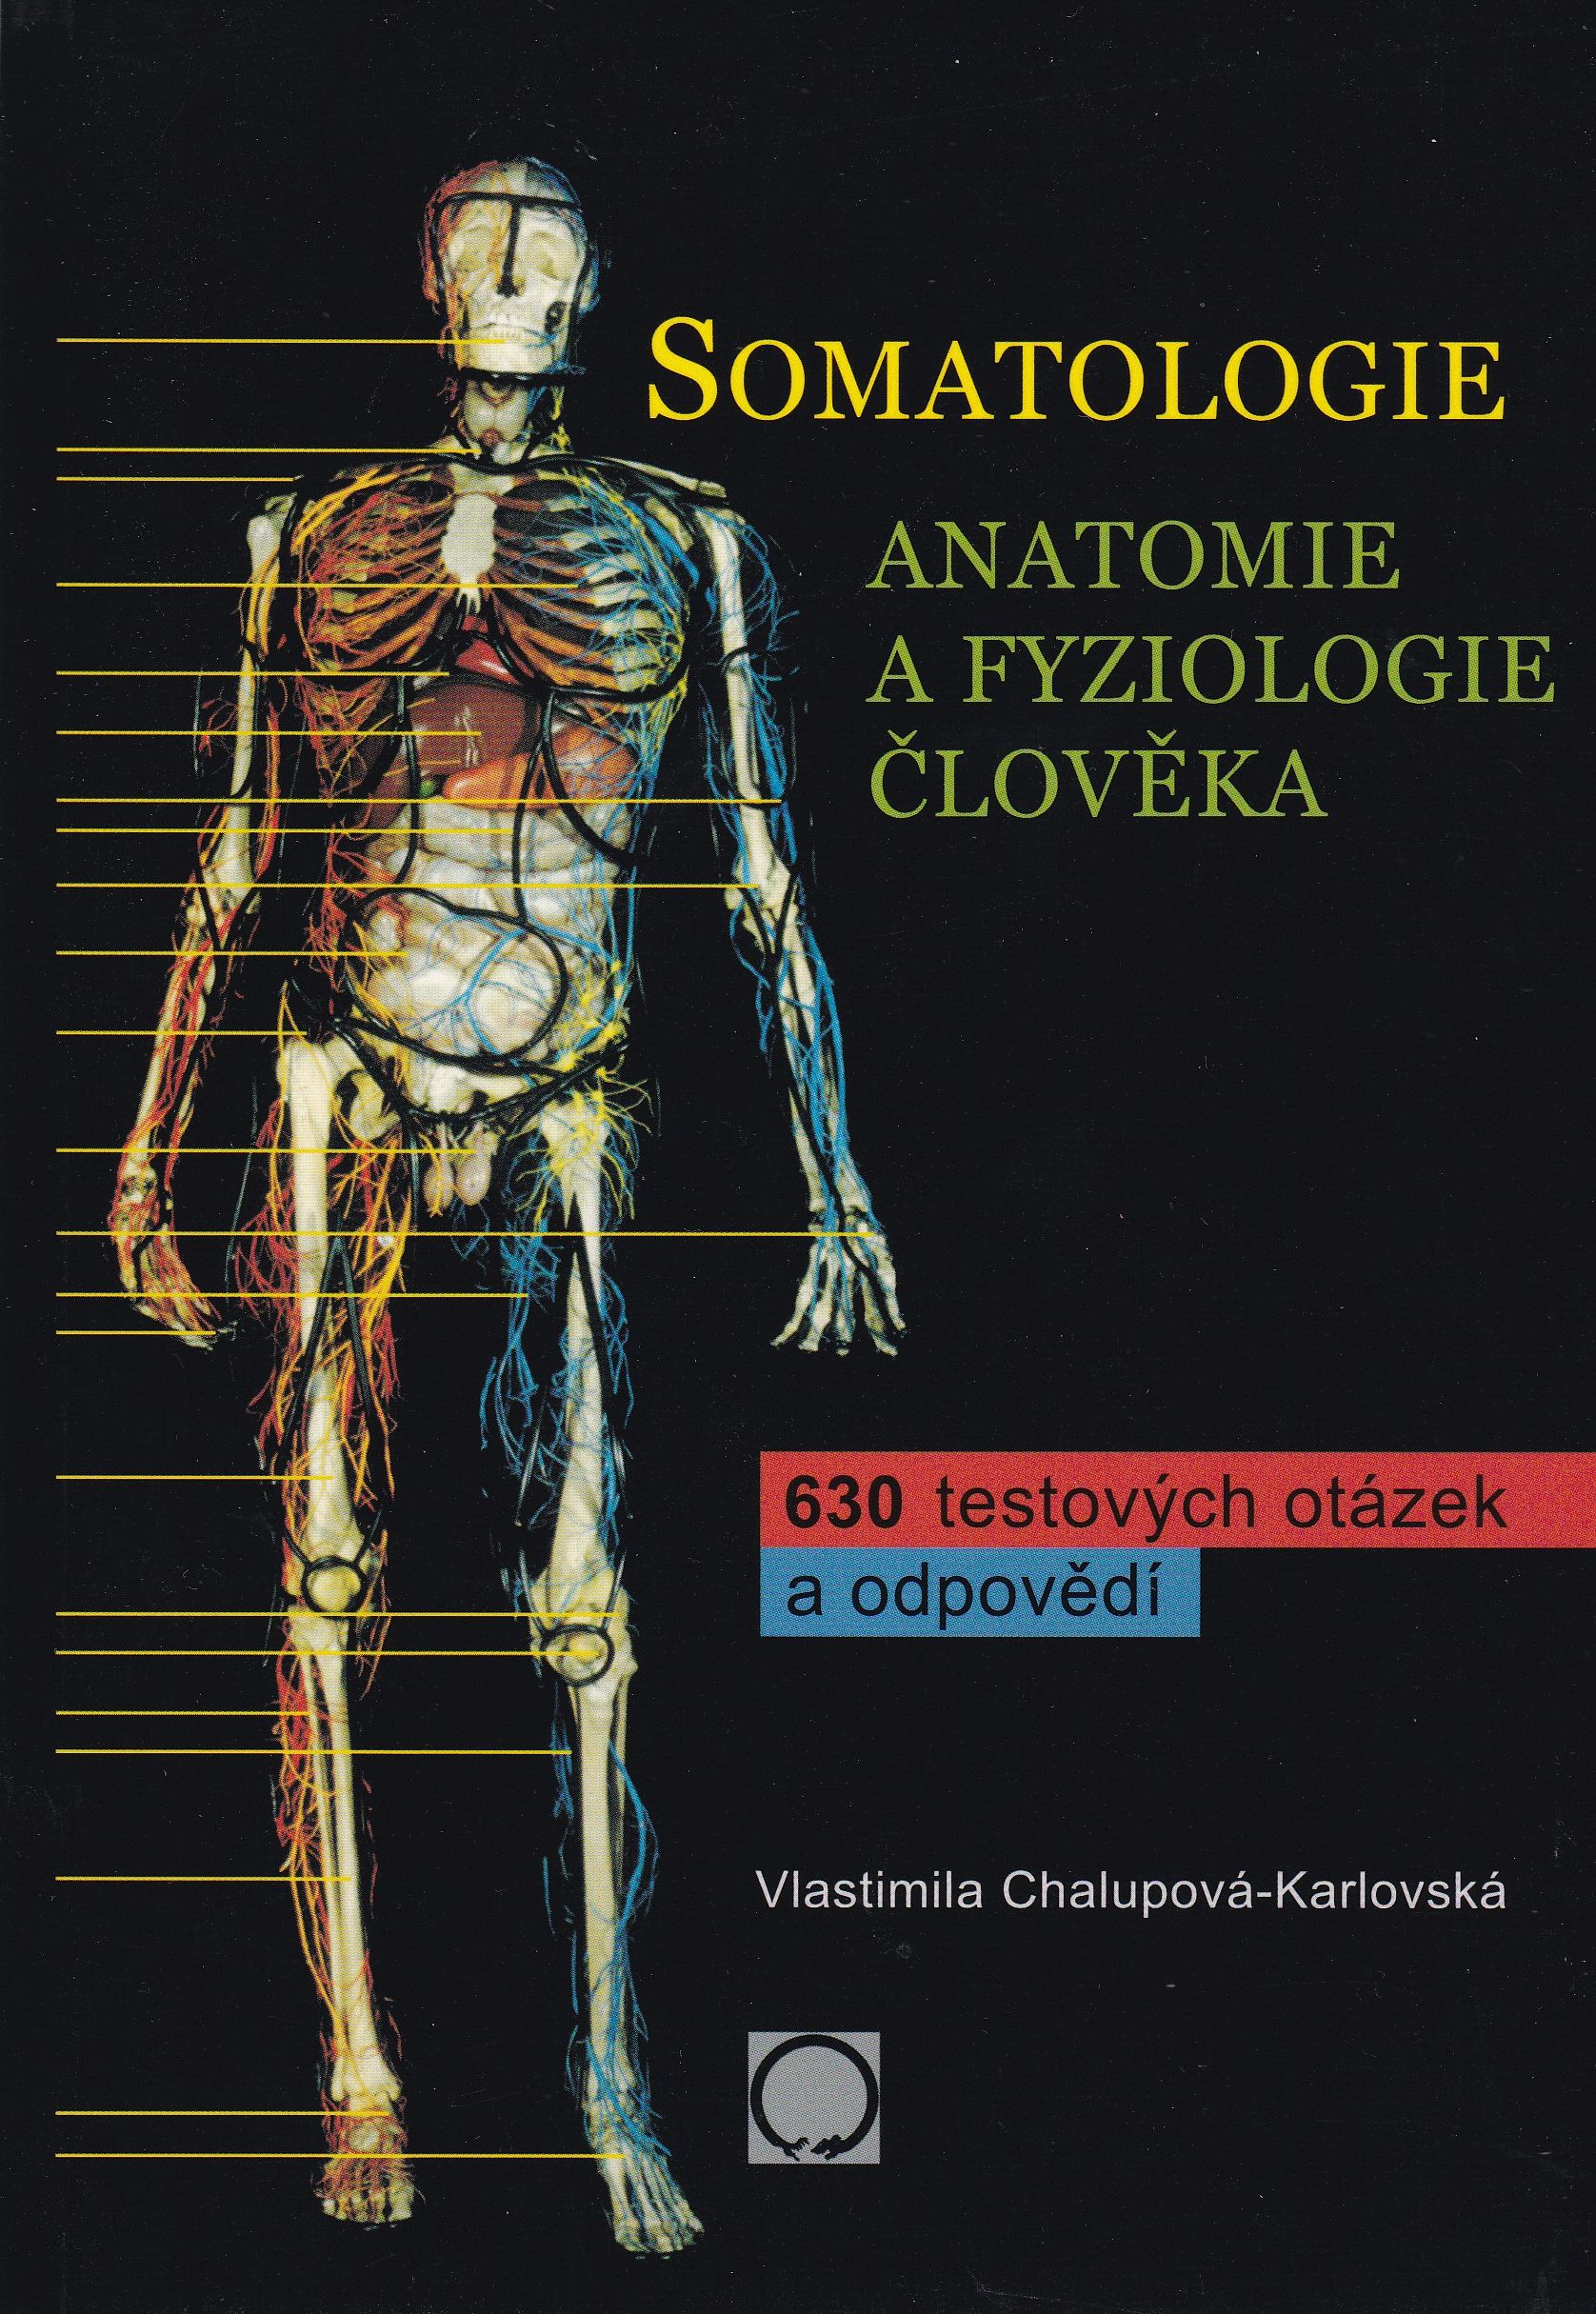 SOMATOLOGIE - anatomie a fyziologie člověka 630 testových otázek a odpovědí